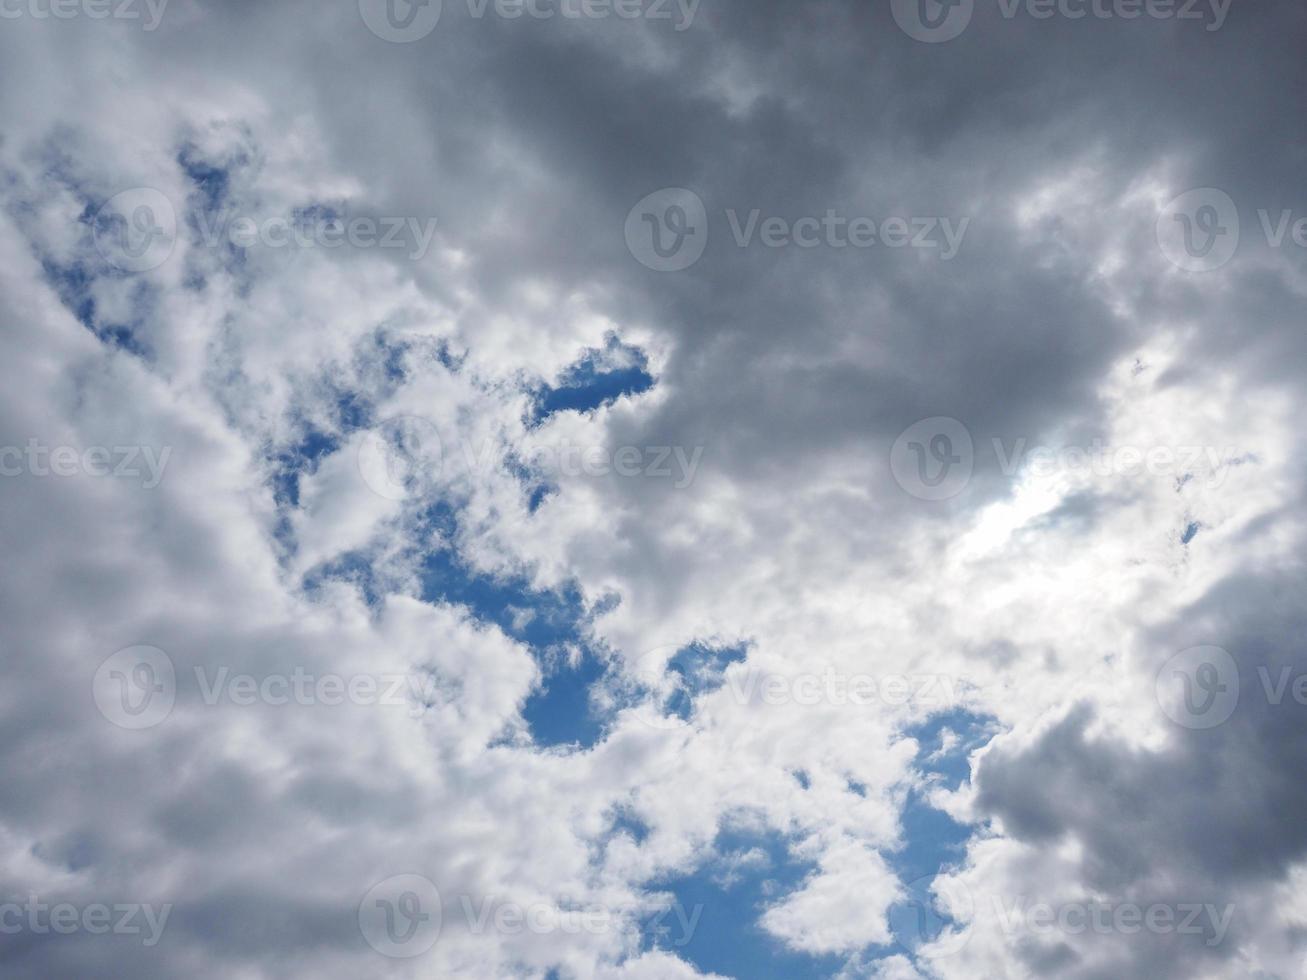 ciel bleu avec fond de nuages photo